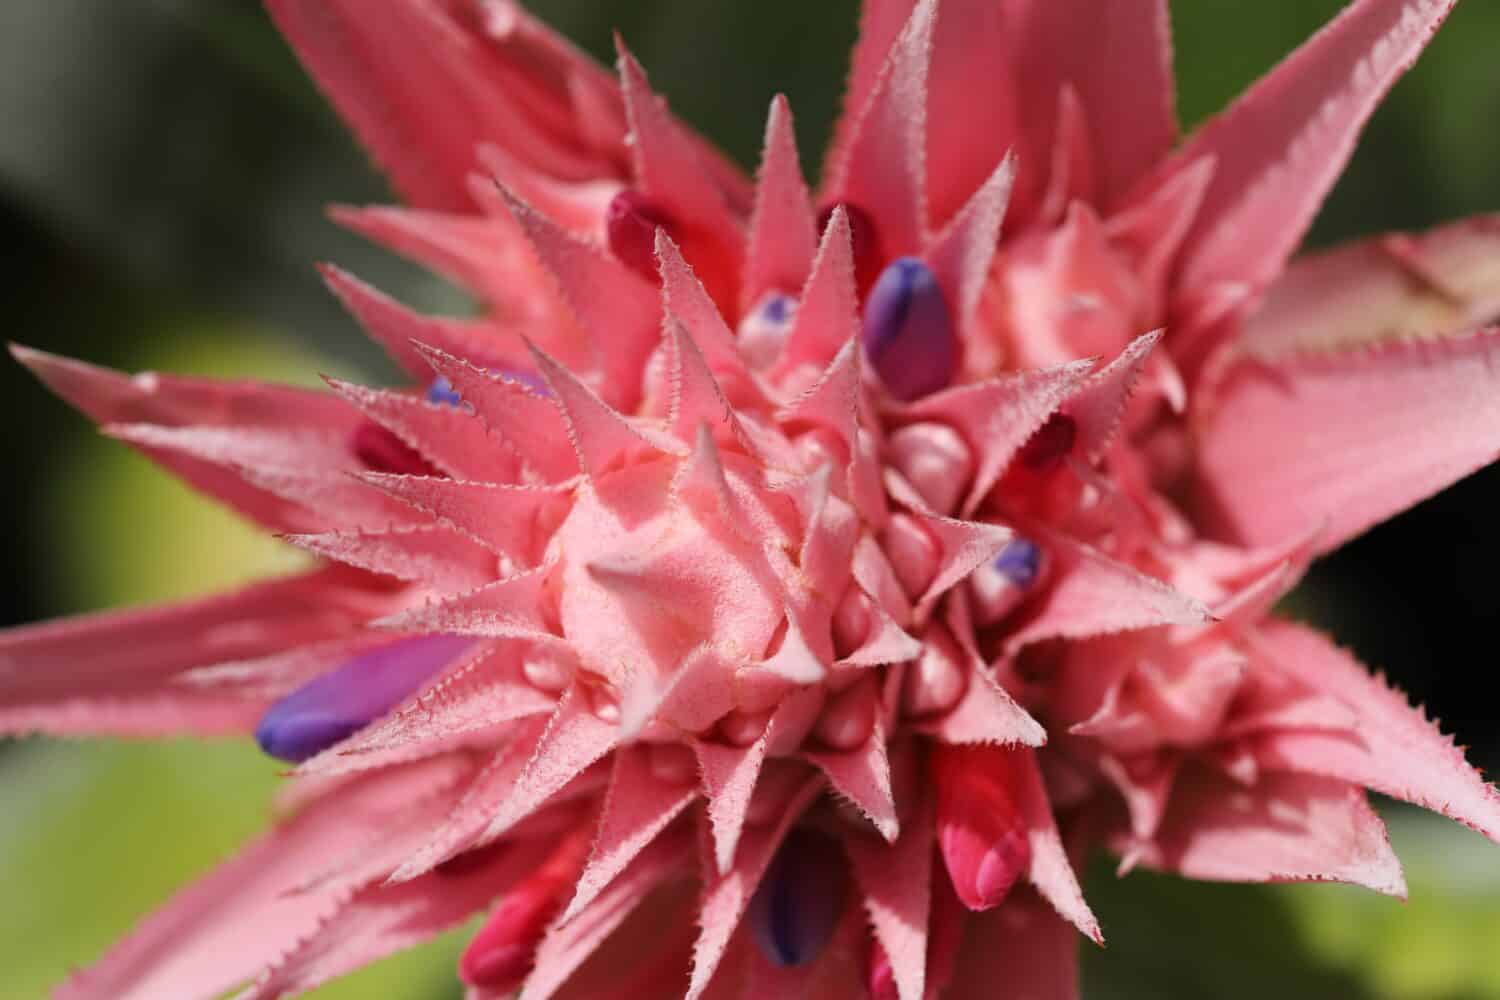 Aechmea fasciata plant close up